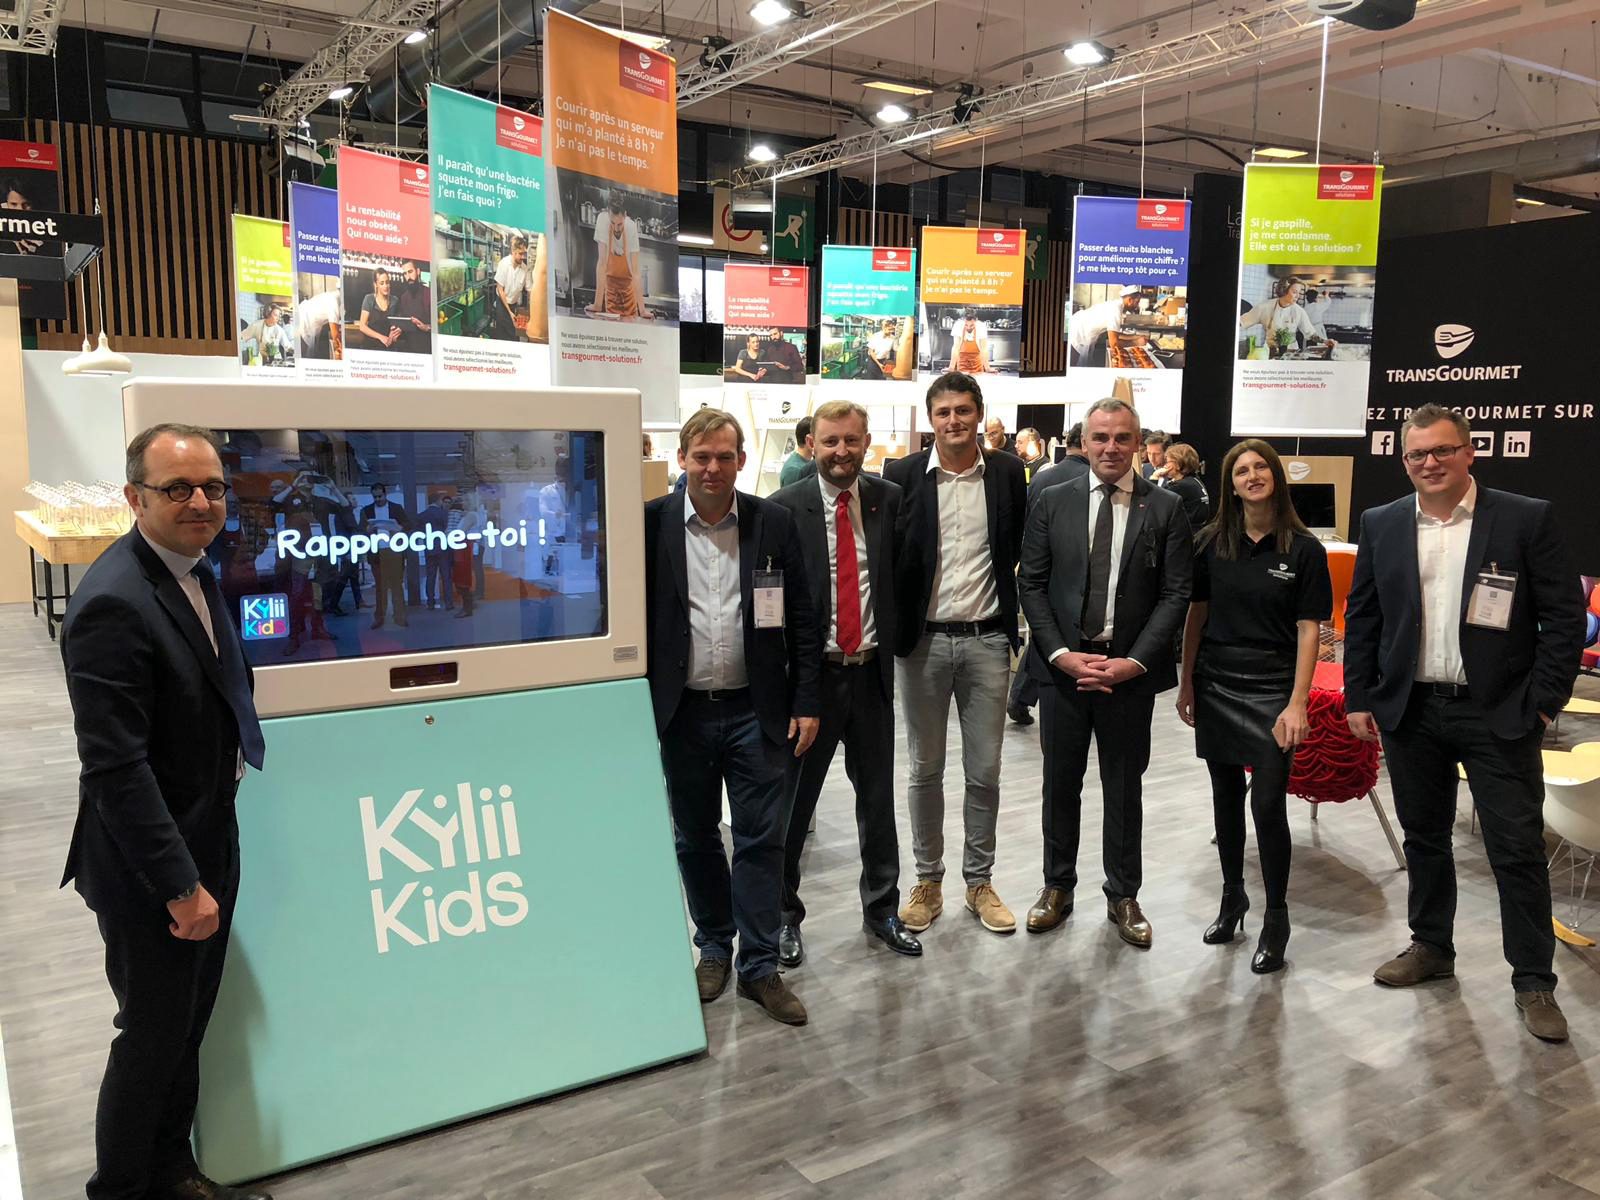 Partenariat signé entre Transgourmet et Kylii Kids